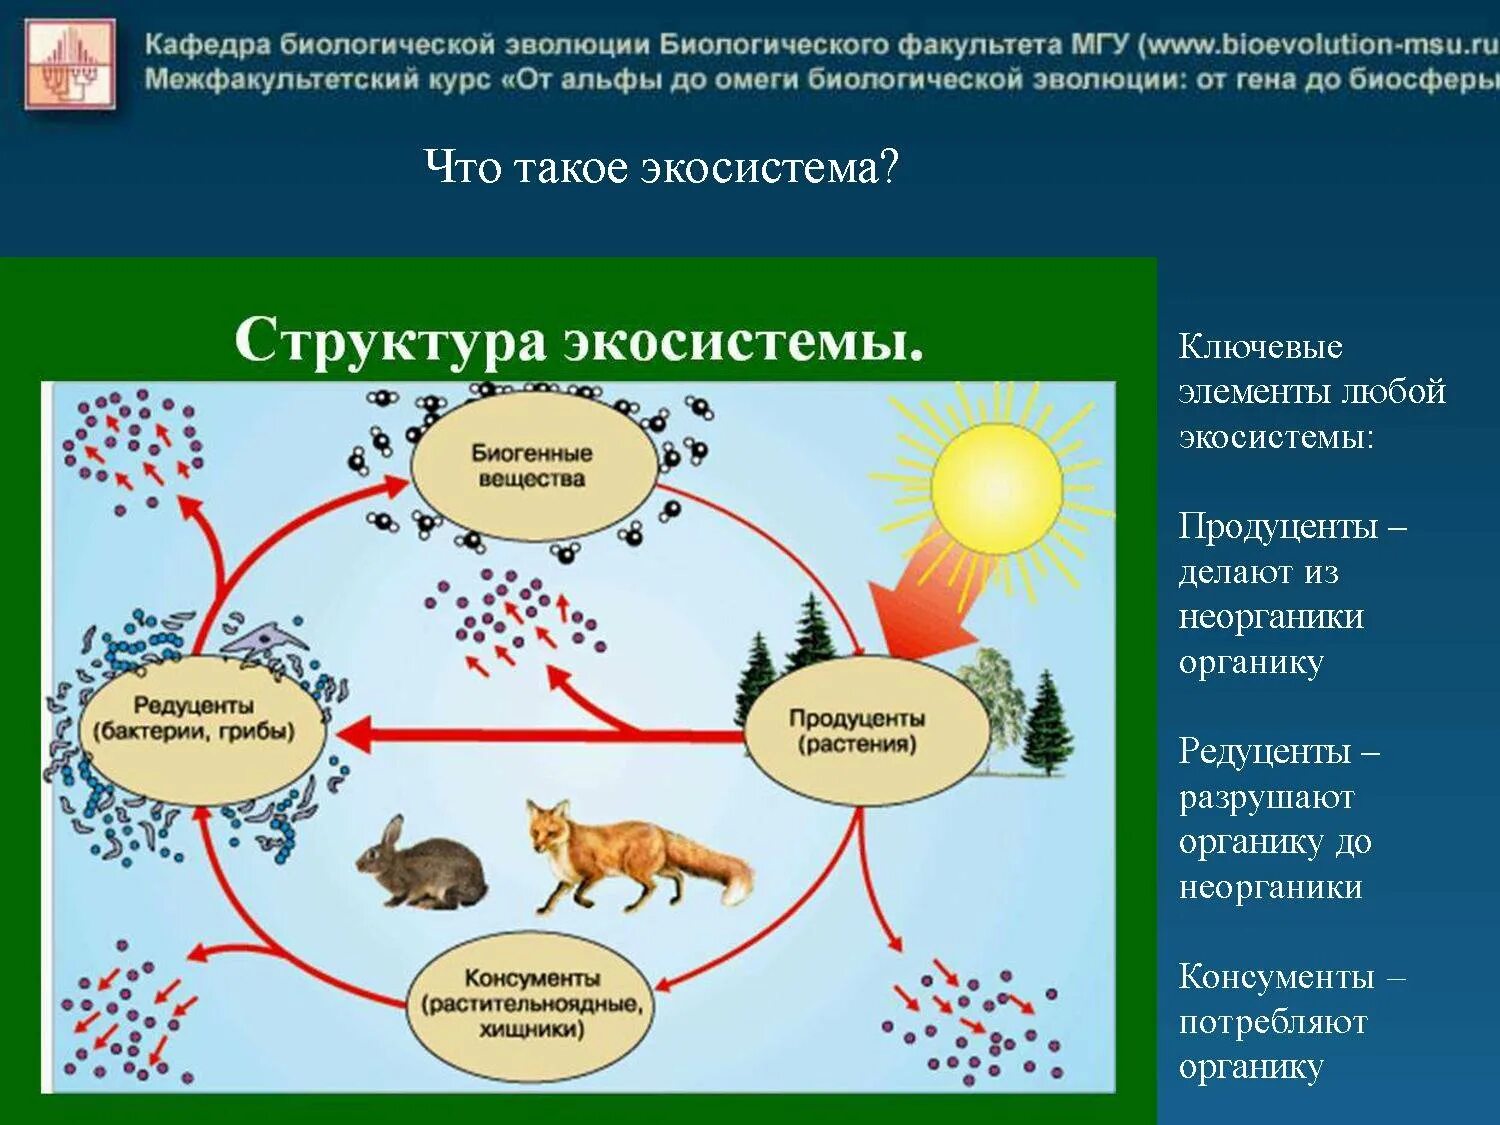 Связь между экосистемами. Круговорот веществ в экосистеме. Круговорот энергии в экосистеме. Биогенный круговорот веществ. Структура экосистемы.